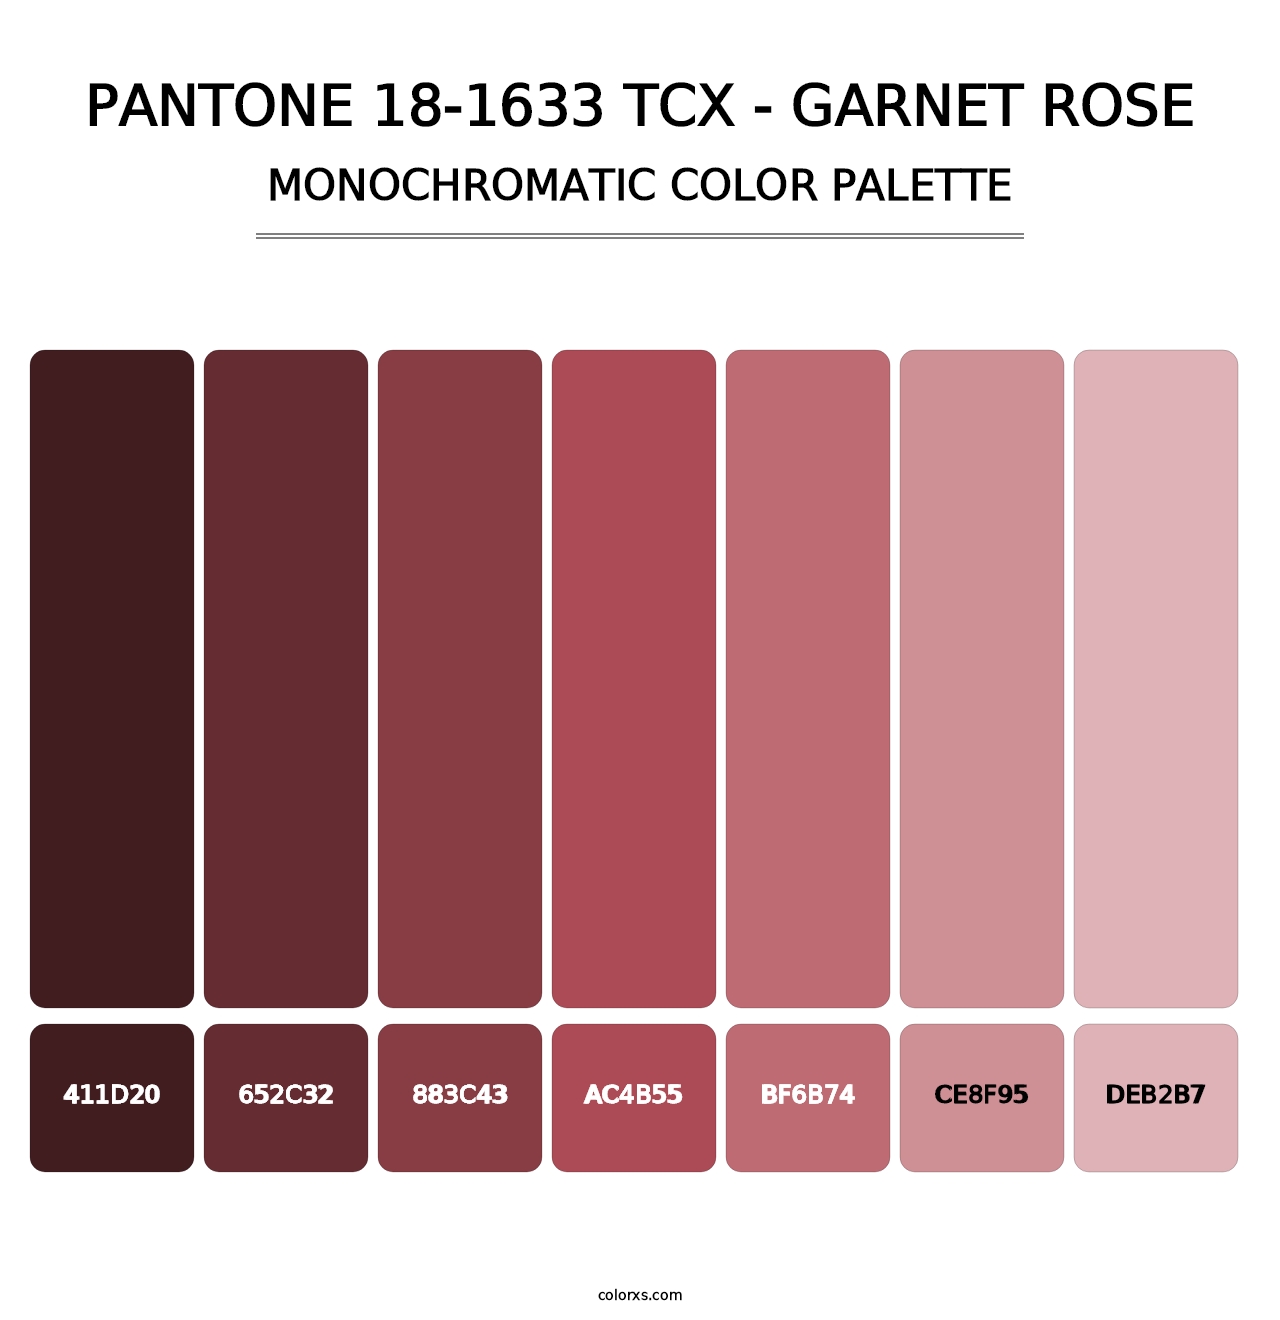 PANTONE 18-1633 TCX - Garnet Rose - Monochromatic Color Palette